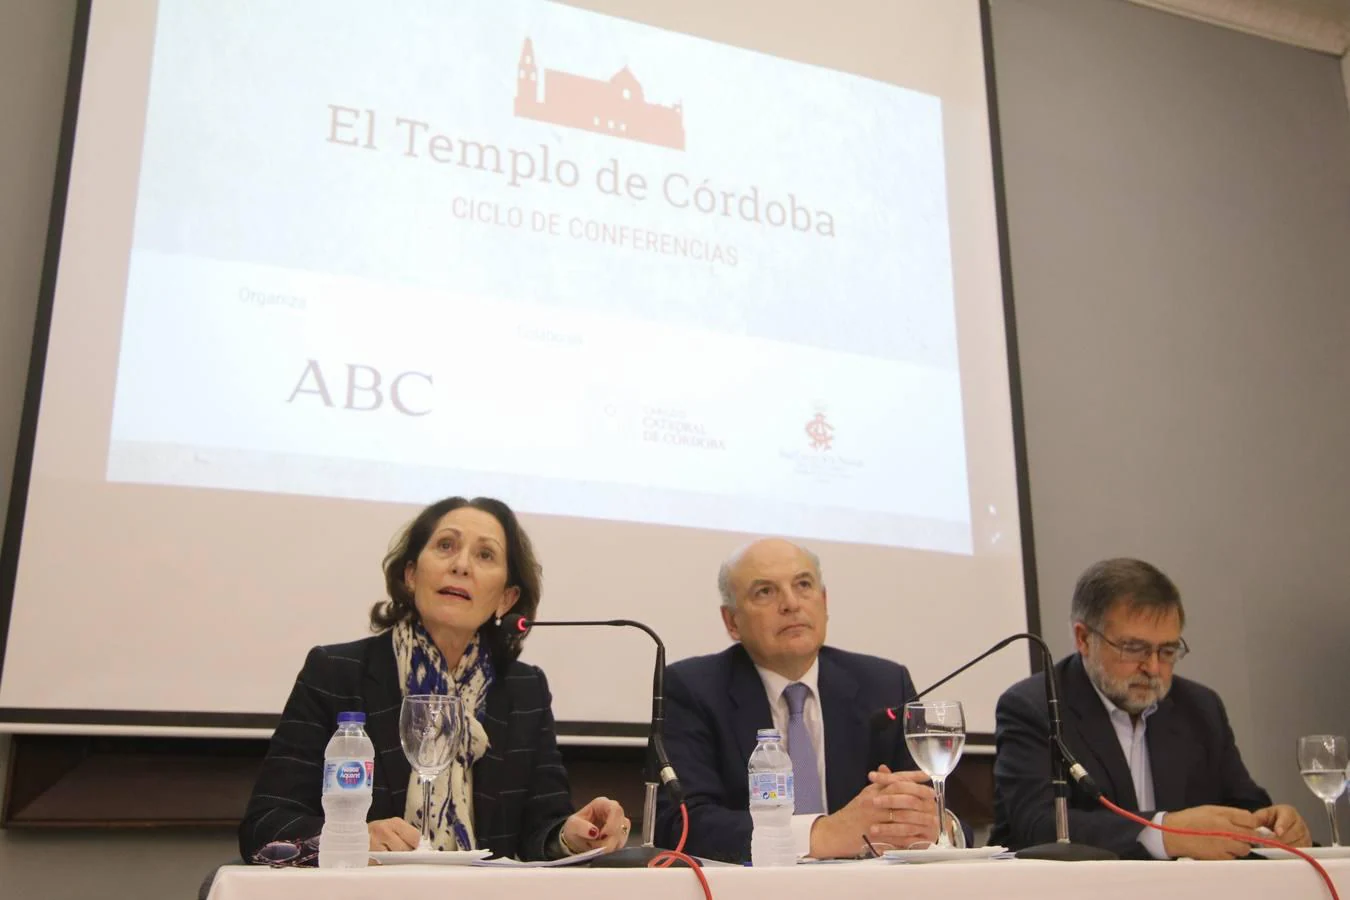 Sánchez Saus en el foro «El templo de Córdoba» de ABC, en imágenes